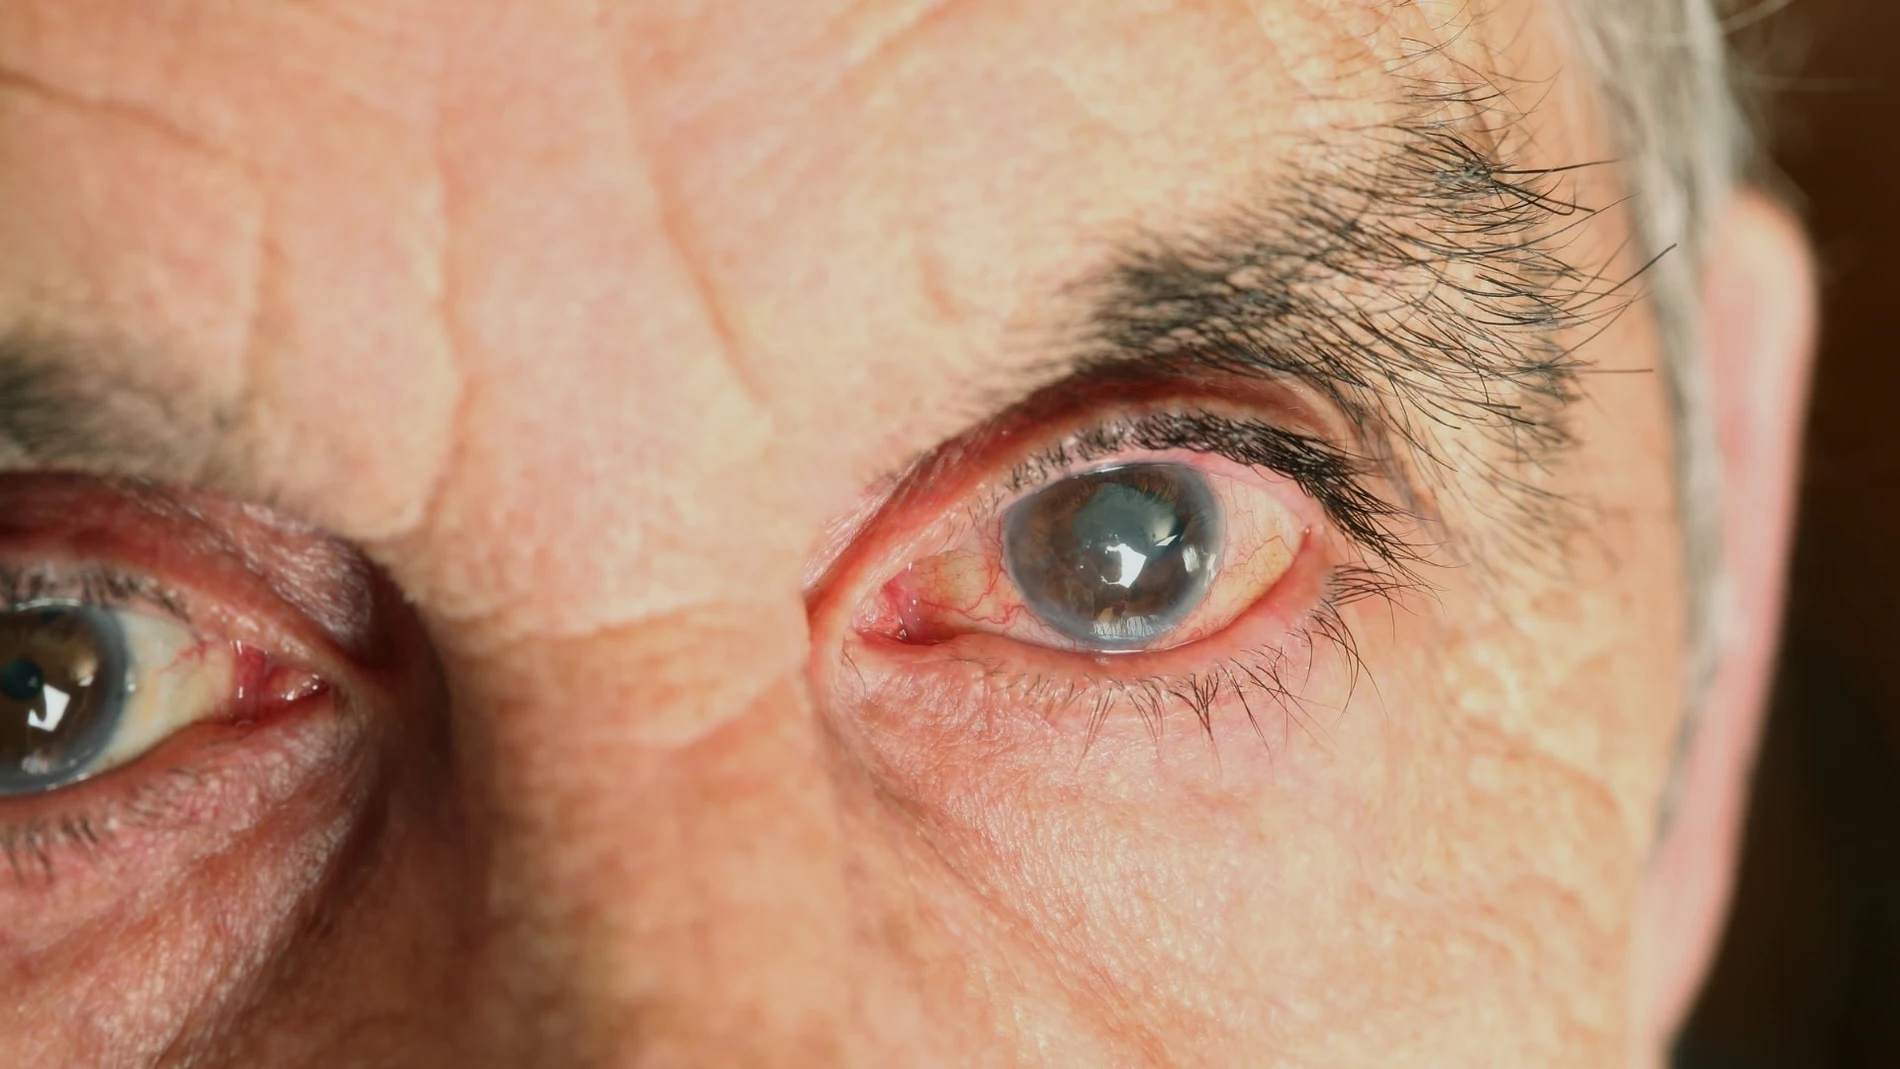 Aprueban en EE UU  faricimab (Roche), que trata dos de las principales causas de pérdida de visión